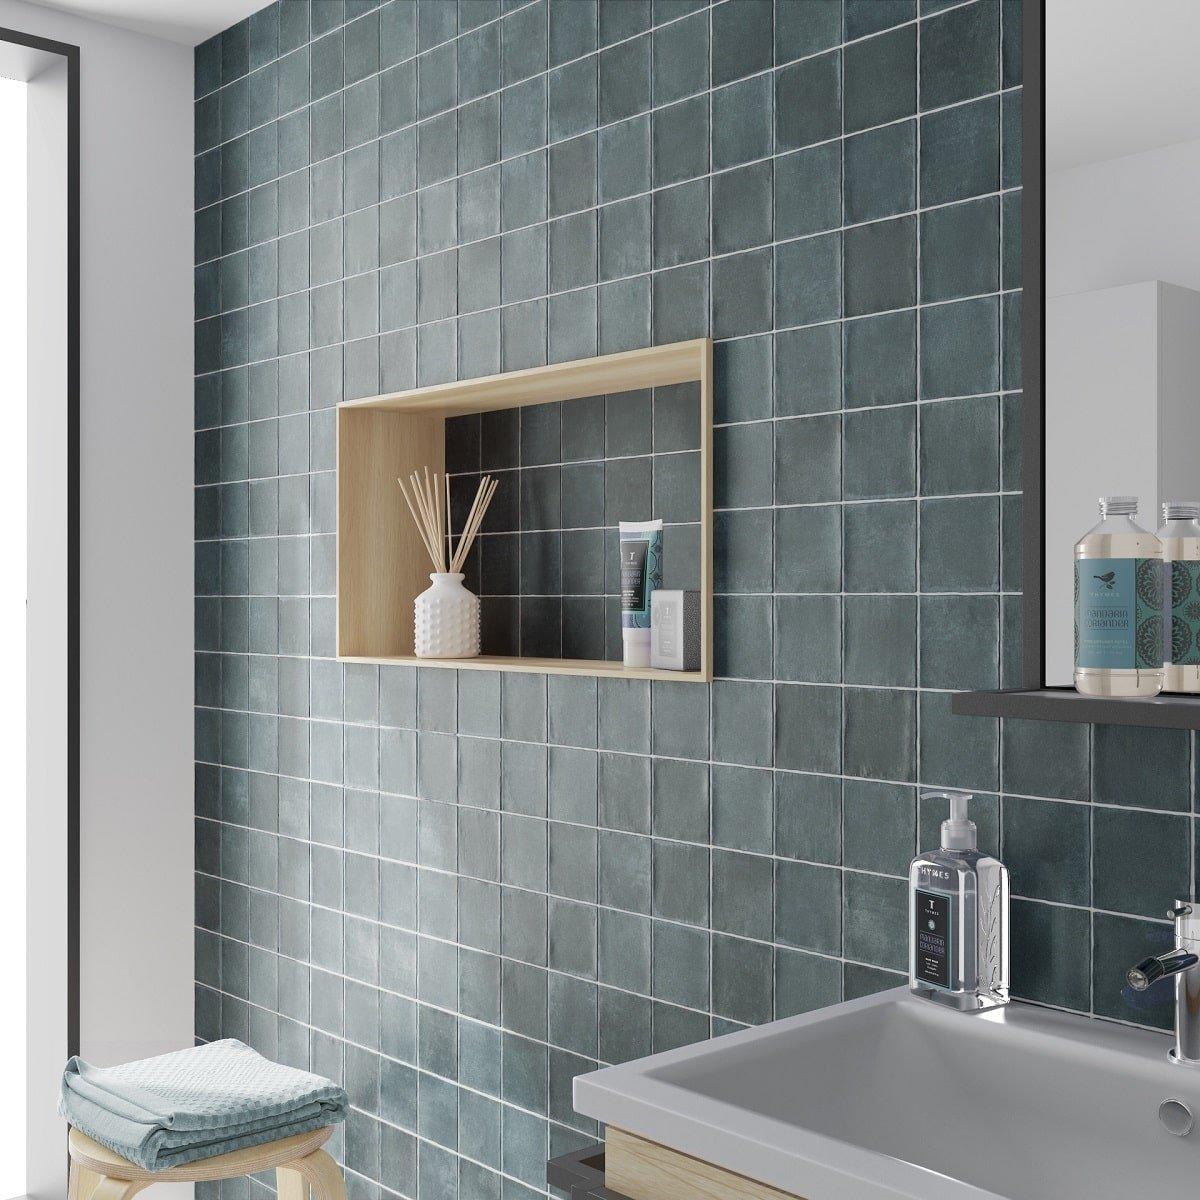 Carrelage Zellige bleu nuances dazur sans motifs 10x10 cm dans une salle de bain aux murs blancs avec étagère et accessoires de bain